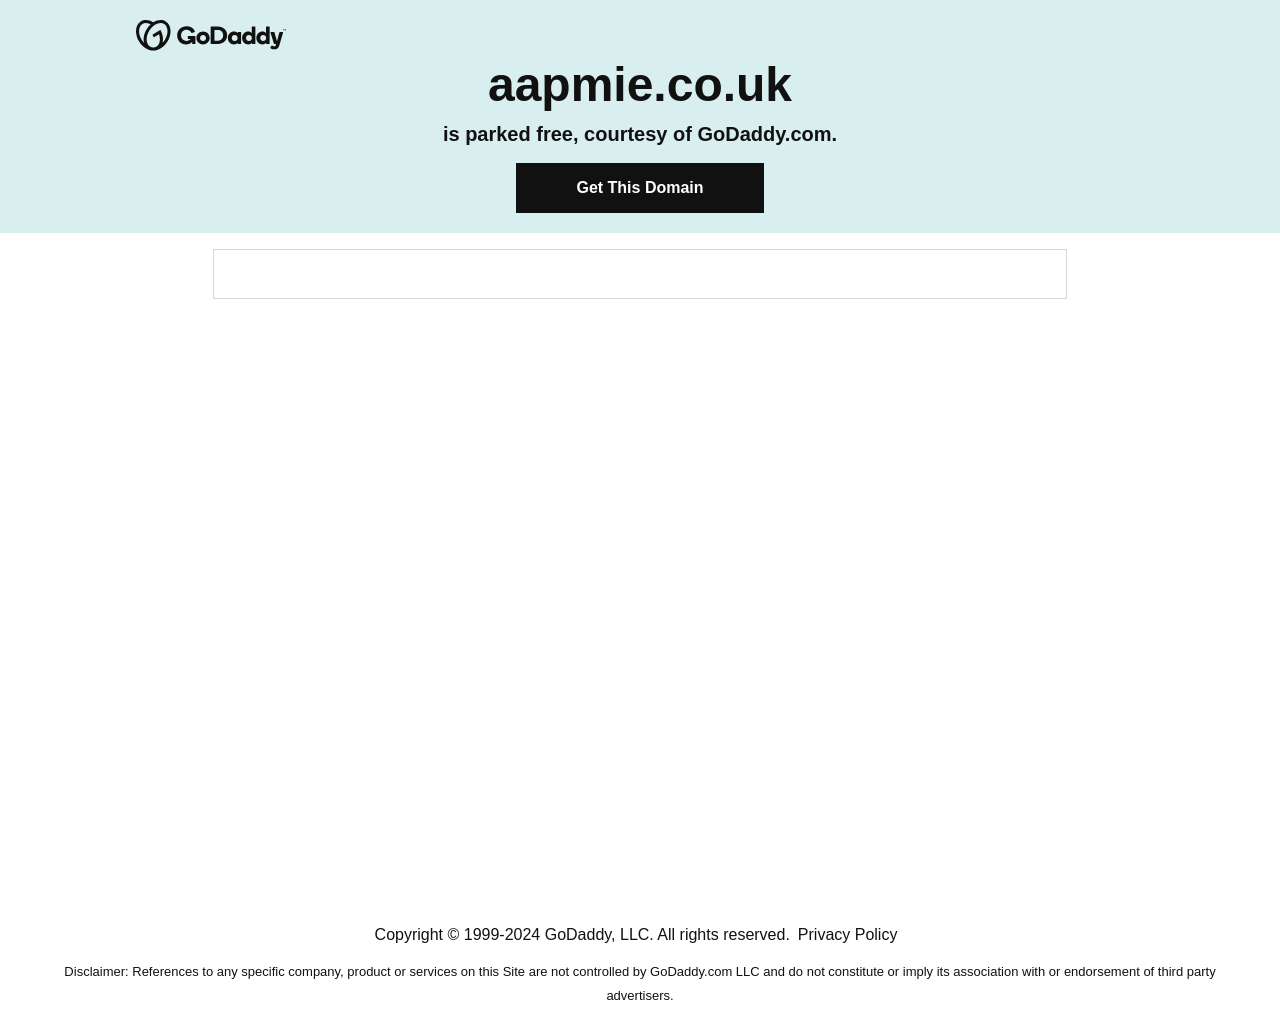 aapmie.co.uk